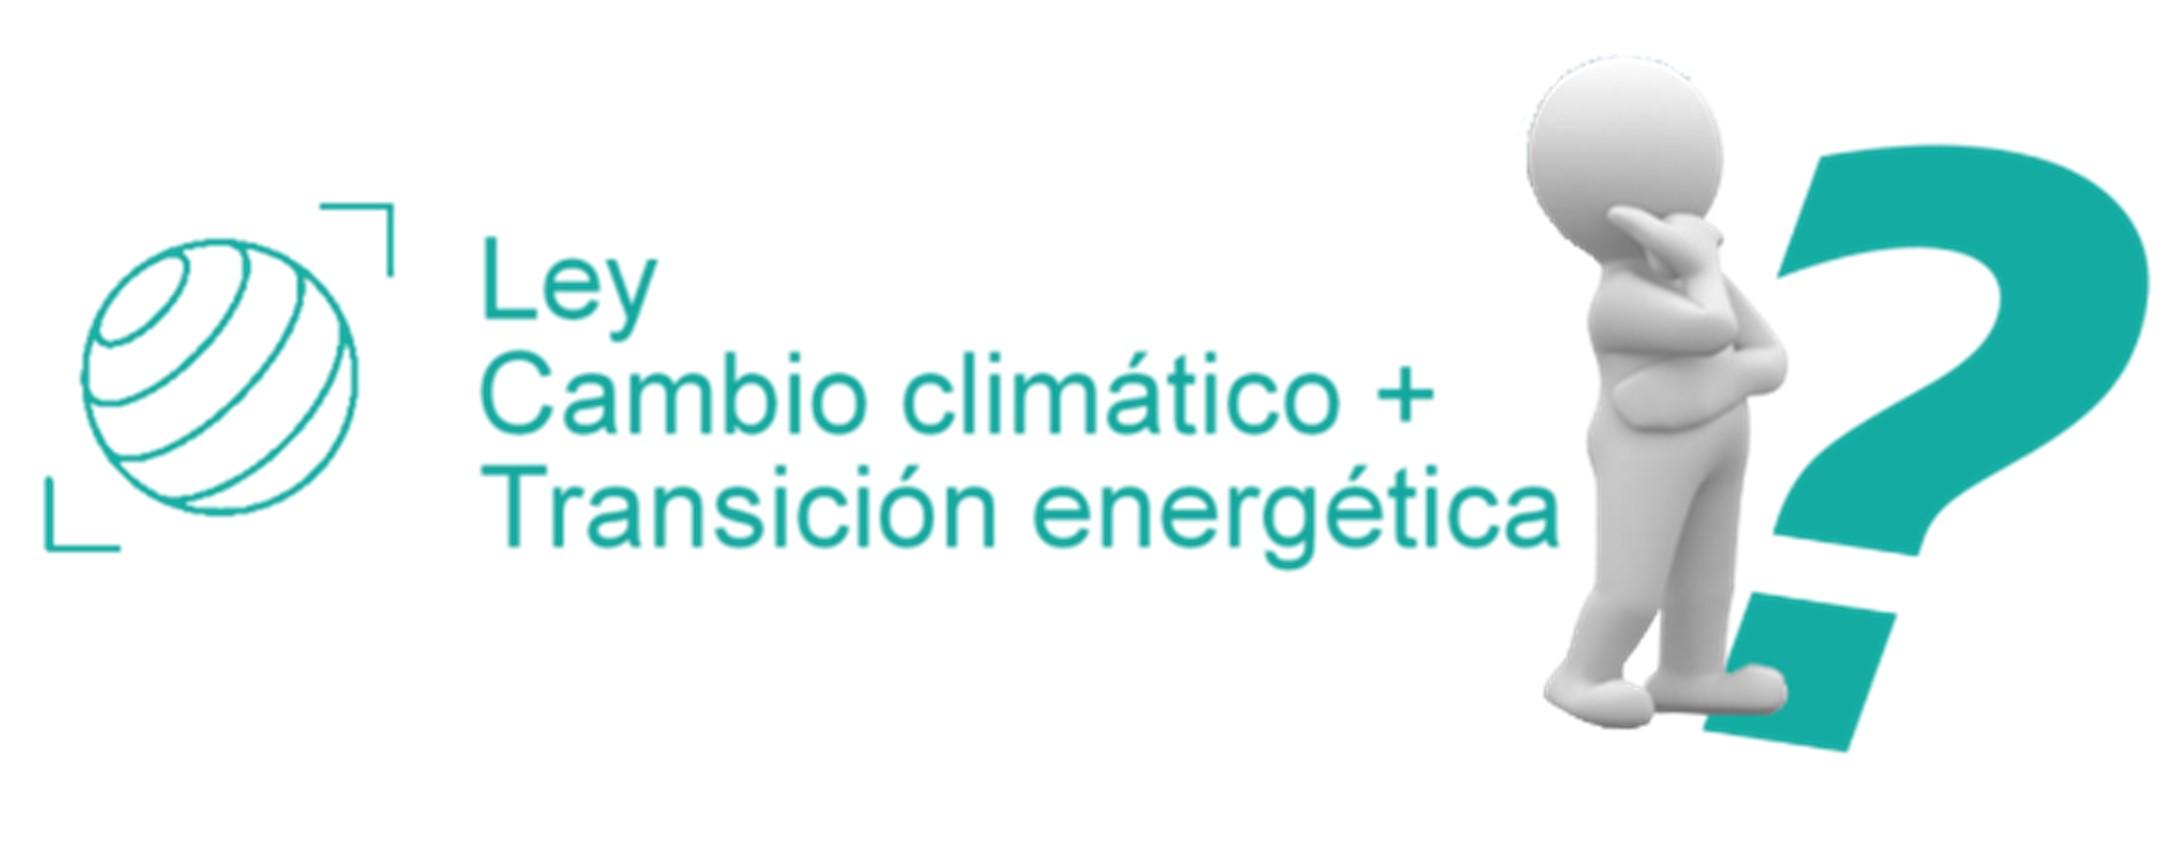 Ley de Cambio Climático y Transición energética de las Illes Balears